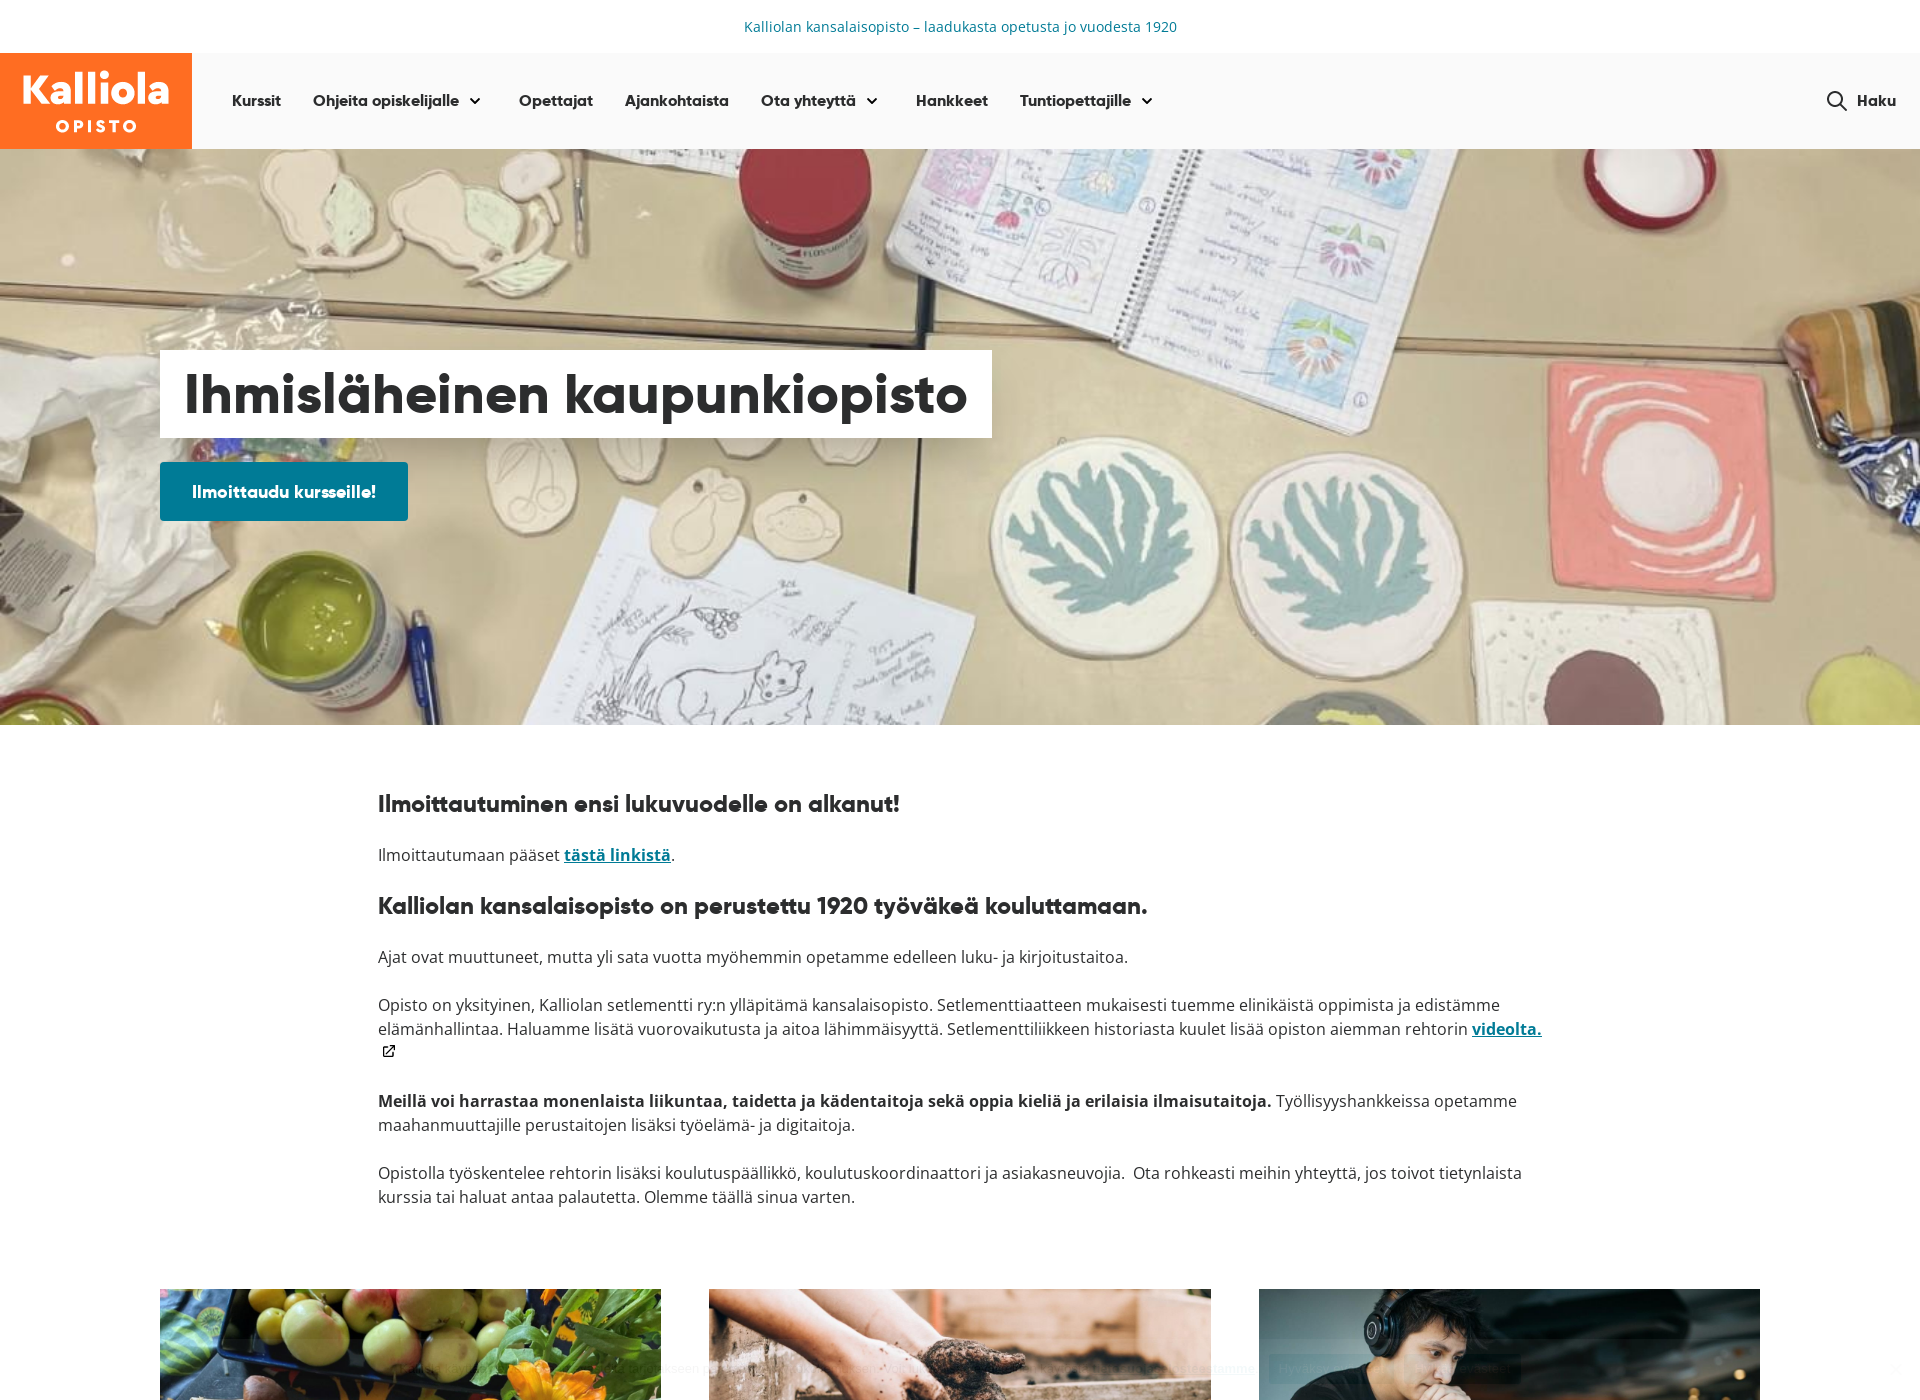 Näyttökuva kalliolankansalaisopisto.fi